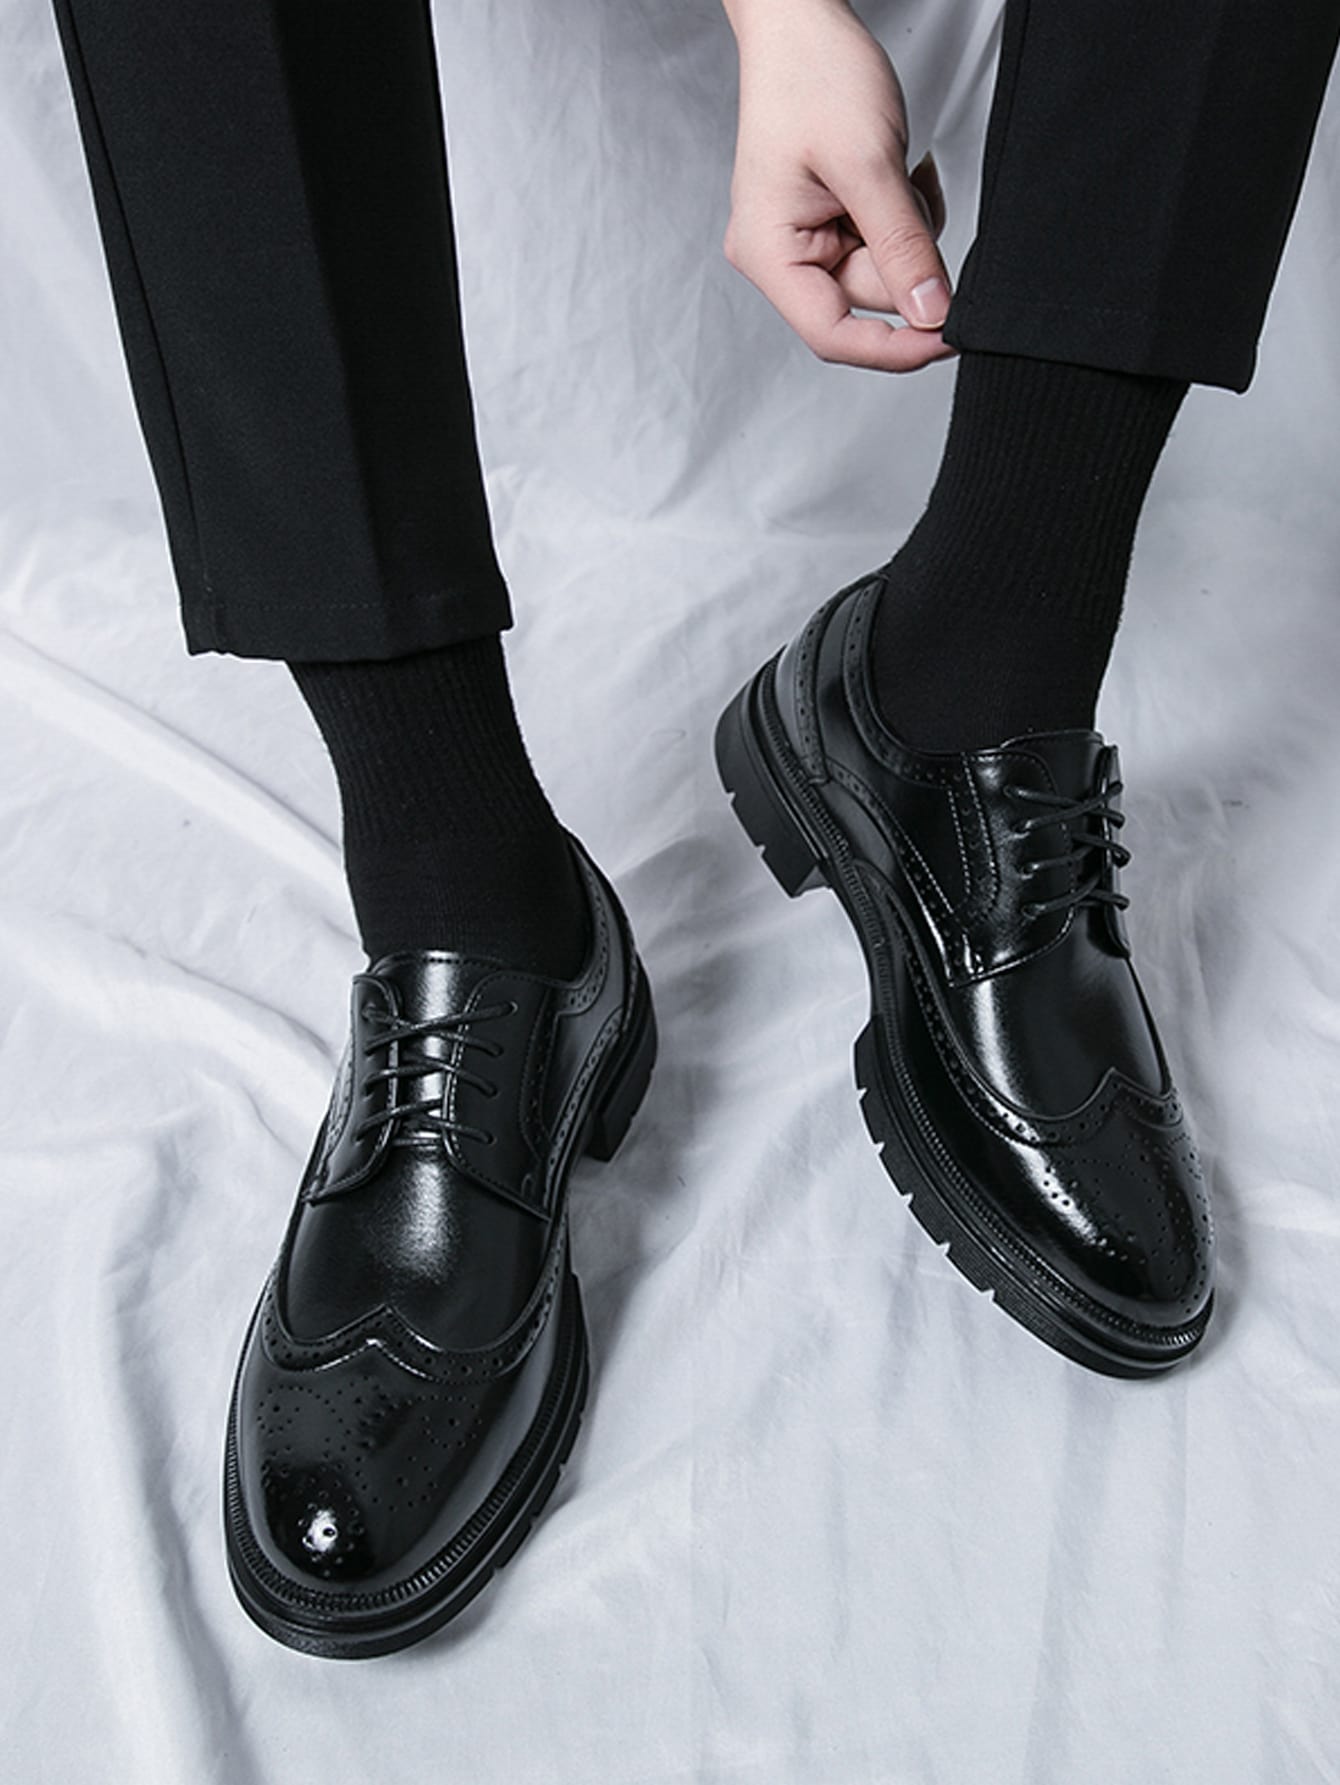 Мужские деловые модельные туфли Коричневые броги на шнуровке Свадебные туфли Обувь для жениха, черный туфли мужские классические кожаные деловые на шнуровке заостренный носок британская мода роскошные ручная работа весна лето 2021